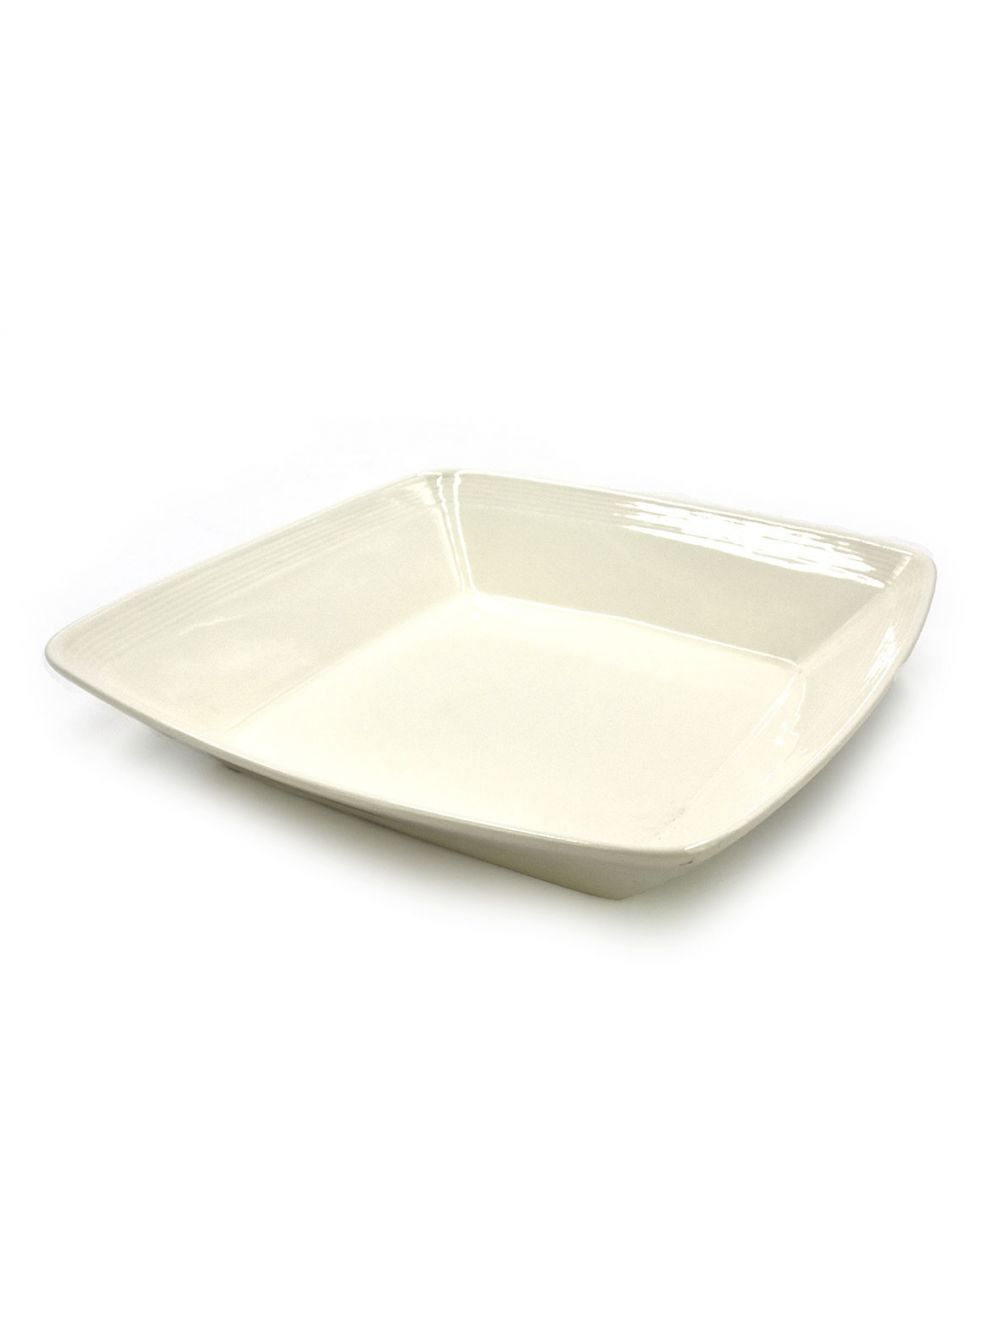 Qualitier Soup Plate - White 22.5 cm